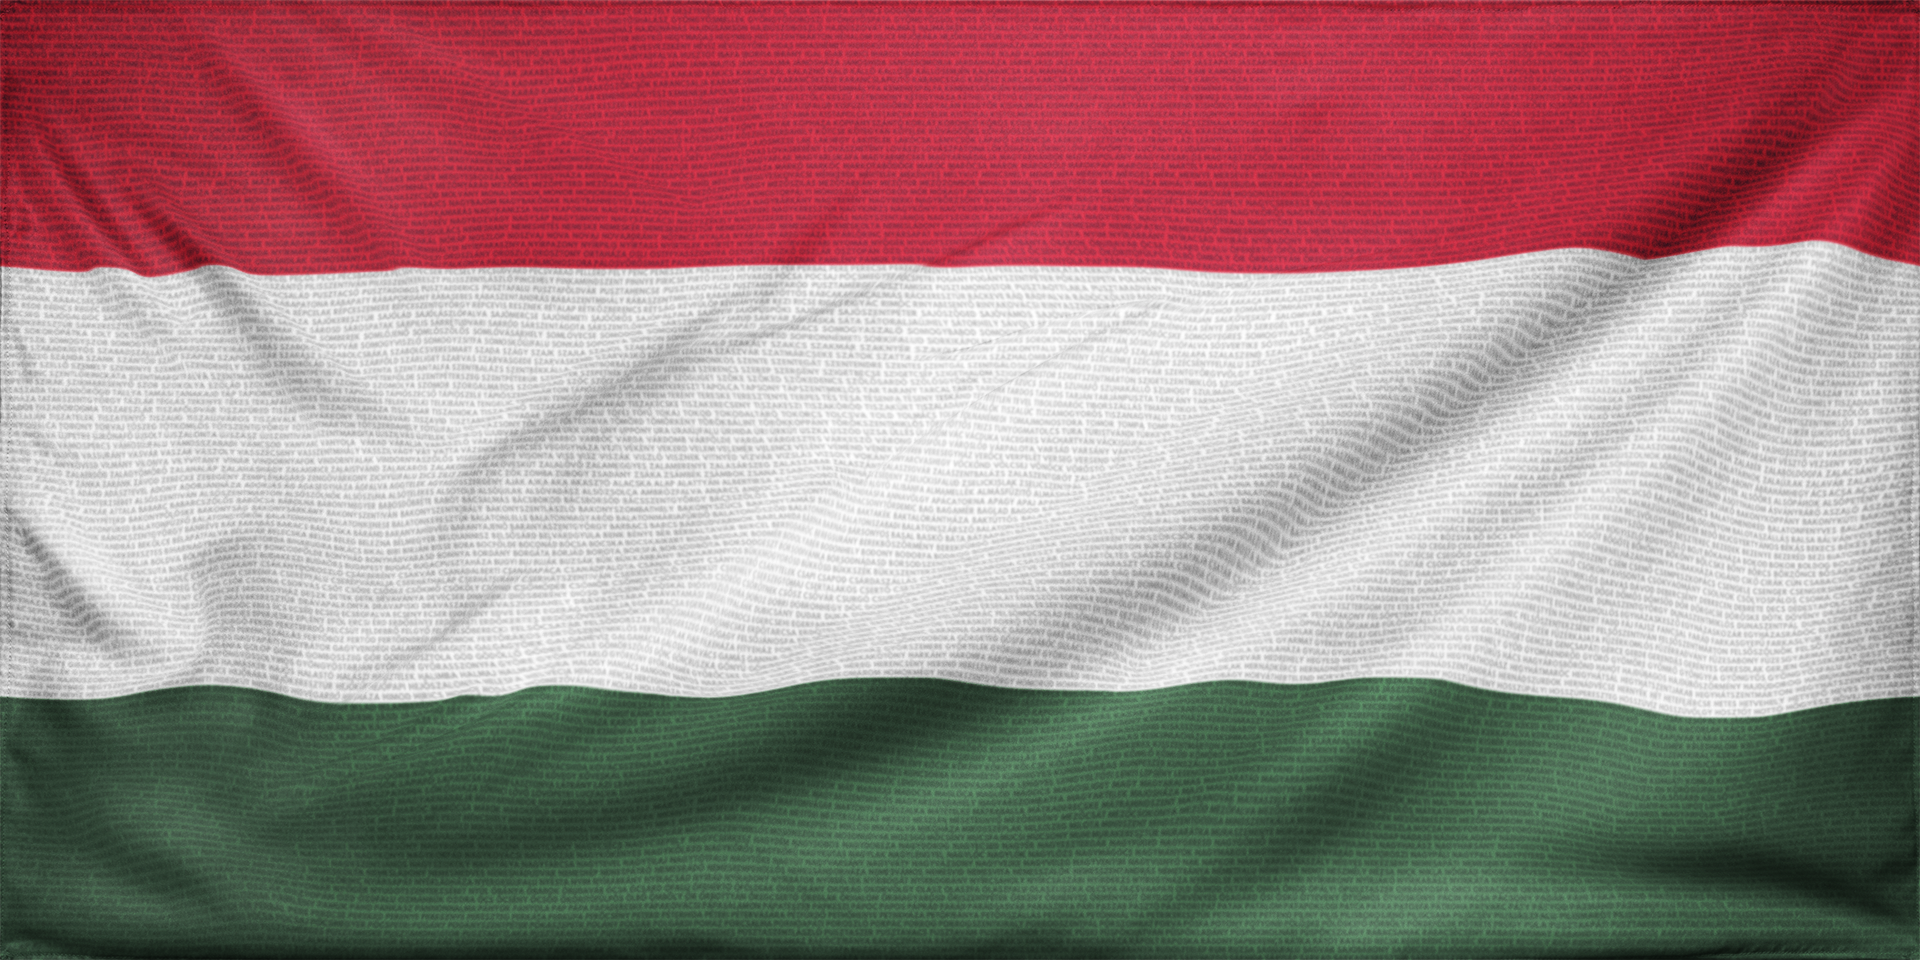 magyaroroszág emlékzászló településnevekkel címer nélkül